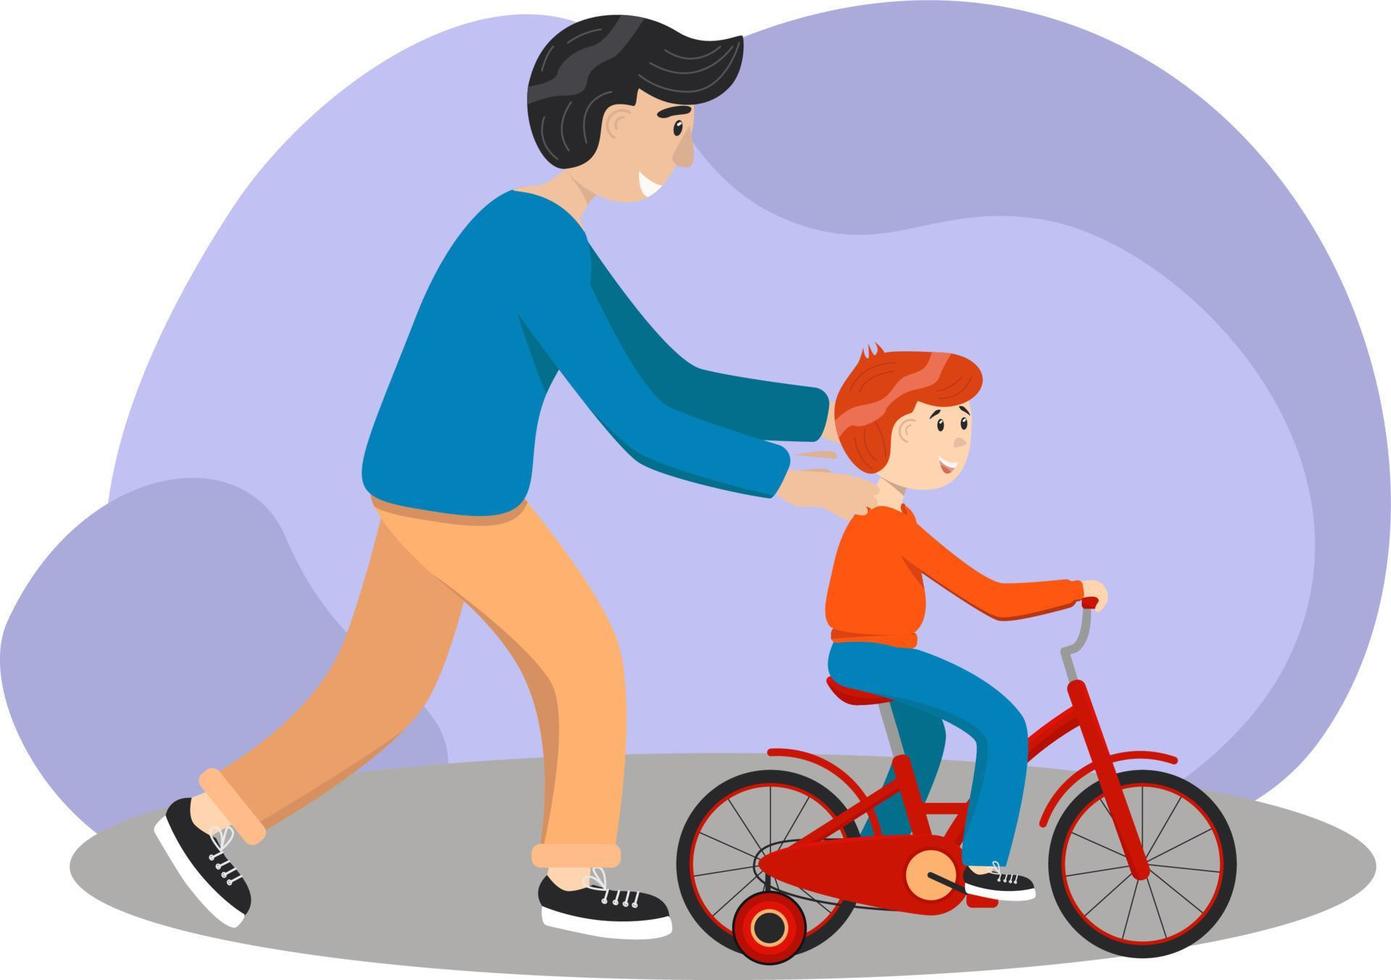 padre le enseña a su hijo a andar en bicicleta. el niño aprende a andar en bicicleta. concepto de crianza. el padre ayuda a su hijo a aprender a andar en bicicleta juntos en el campo. ilustración vectorial de stock, eps 10. vector